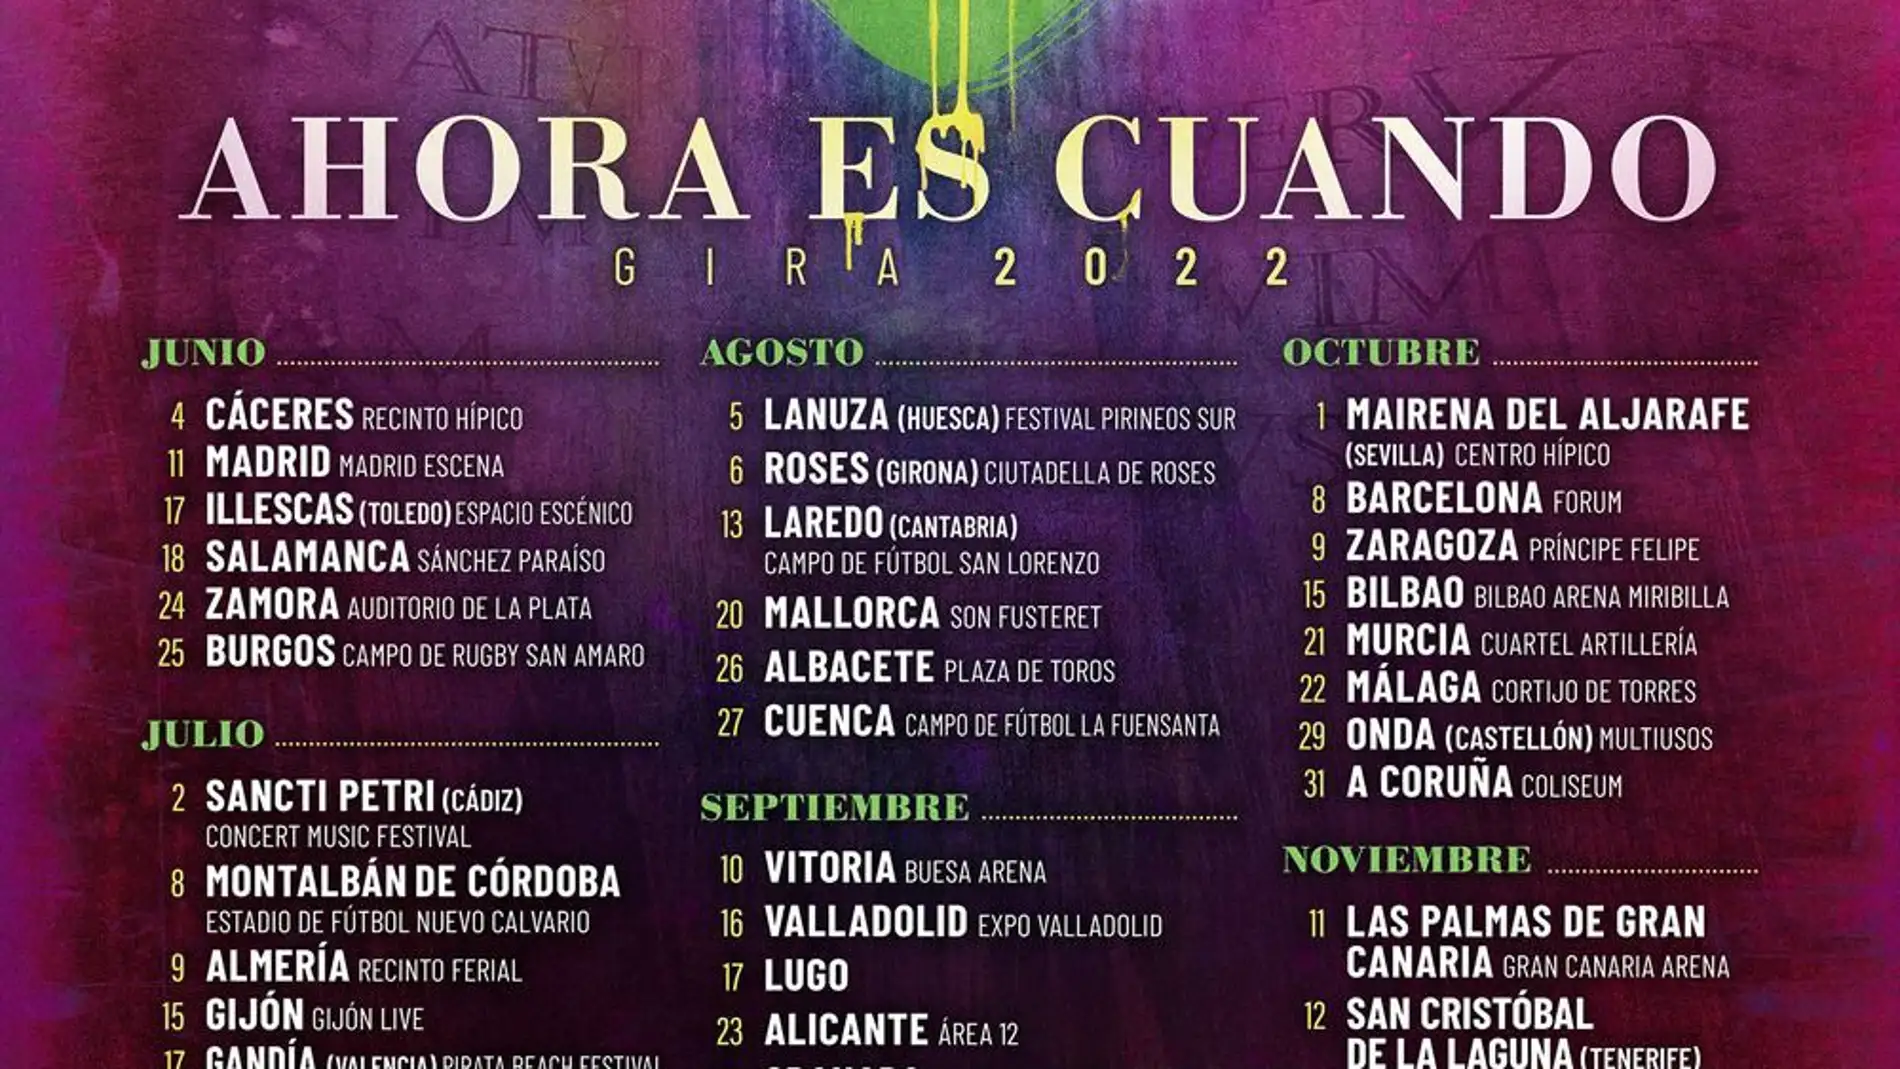 Robe Iniesta abre su gira 'Ahora es cuando' el próximo sábado 4 de